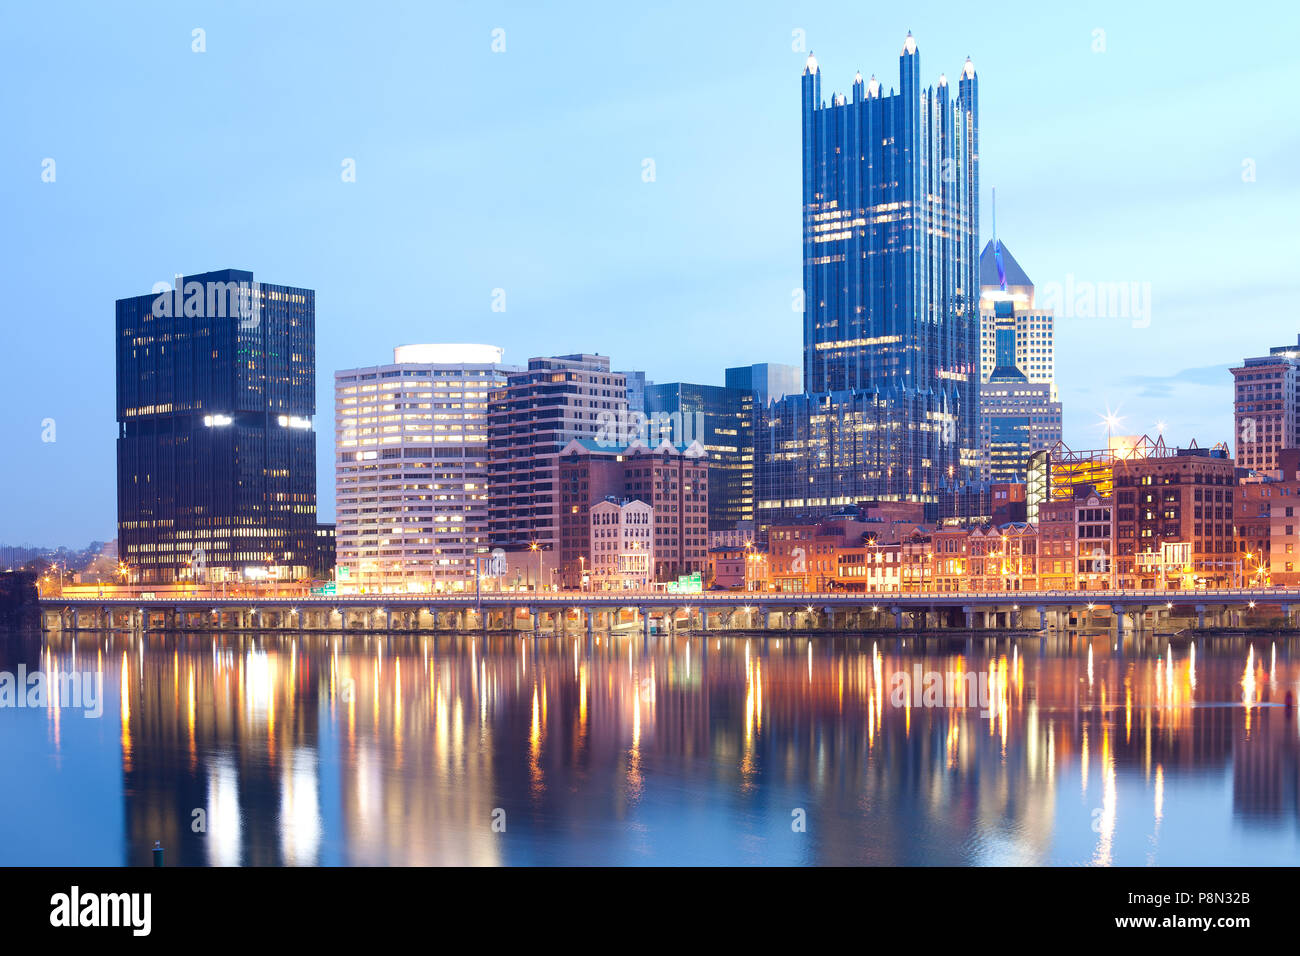 Monongahela River and downtown skyline, Pittsburgh, Pennsylvania, USA Stock Photo